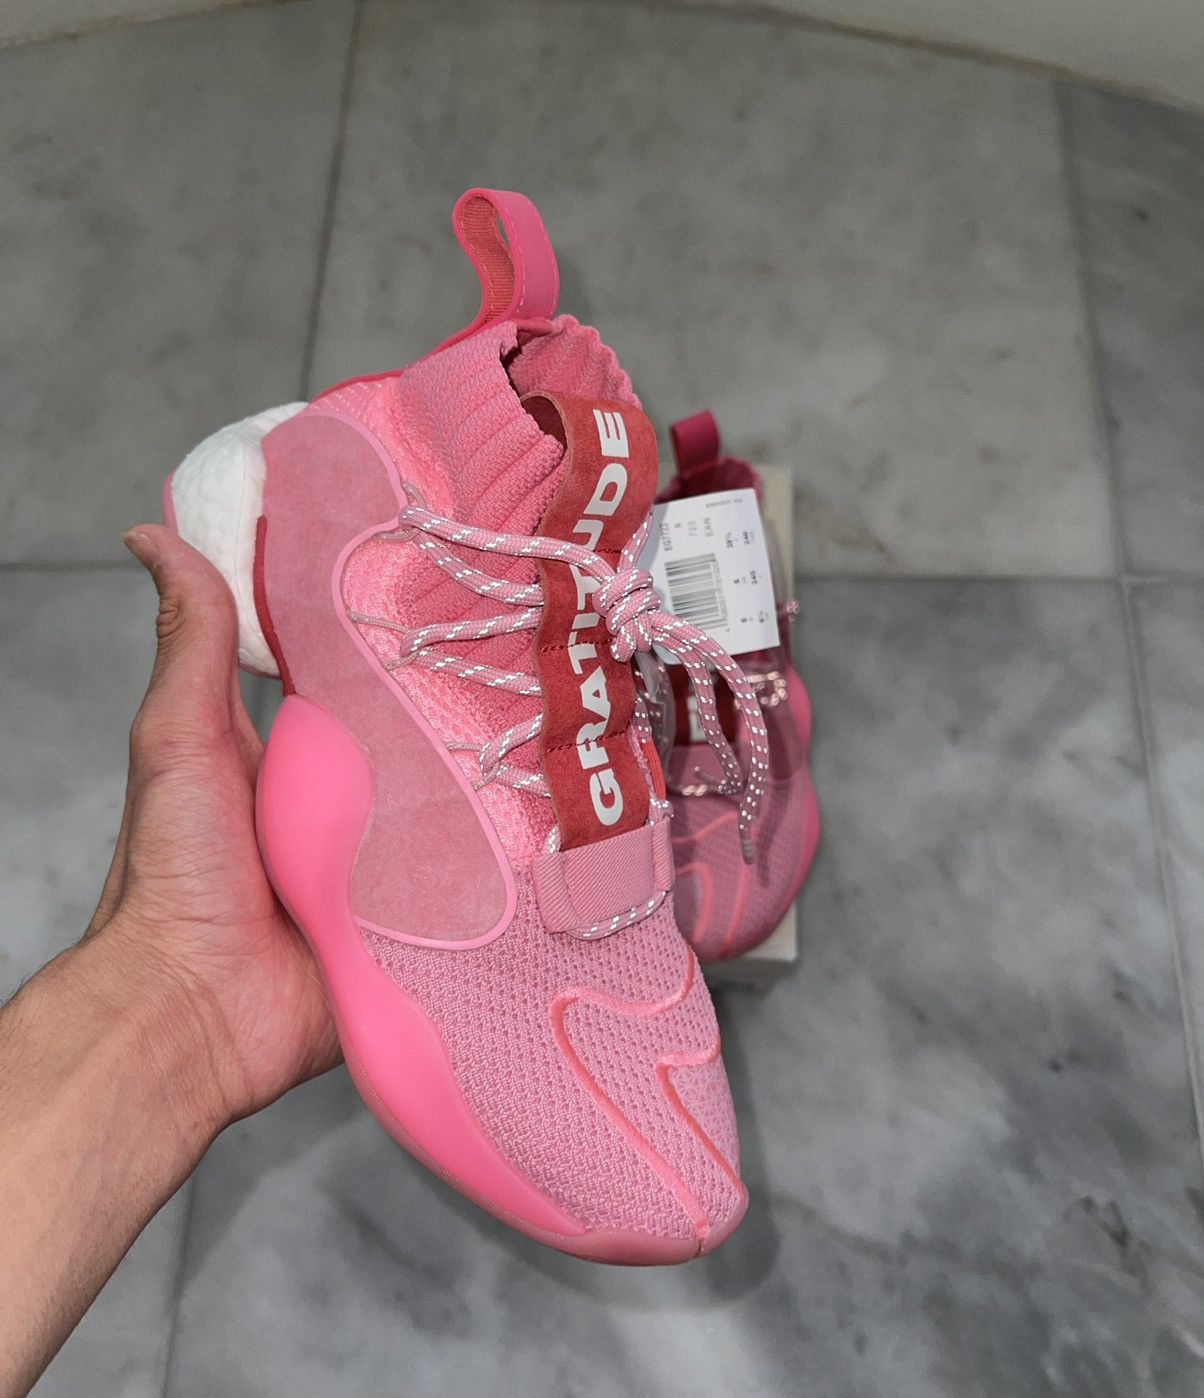 Adidas Pharrell x Crazy BYW X Hyper Pink 2019 Size US 6.5 / EU 39-40 - 5 Thumbnail